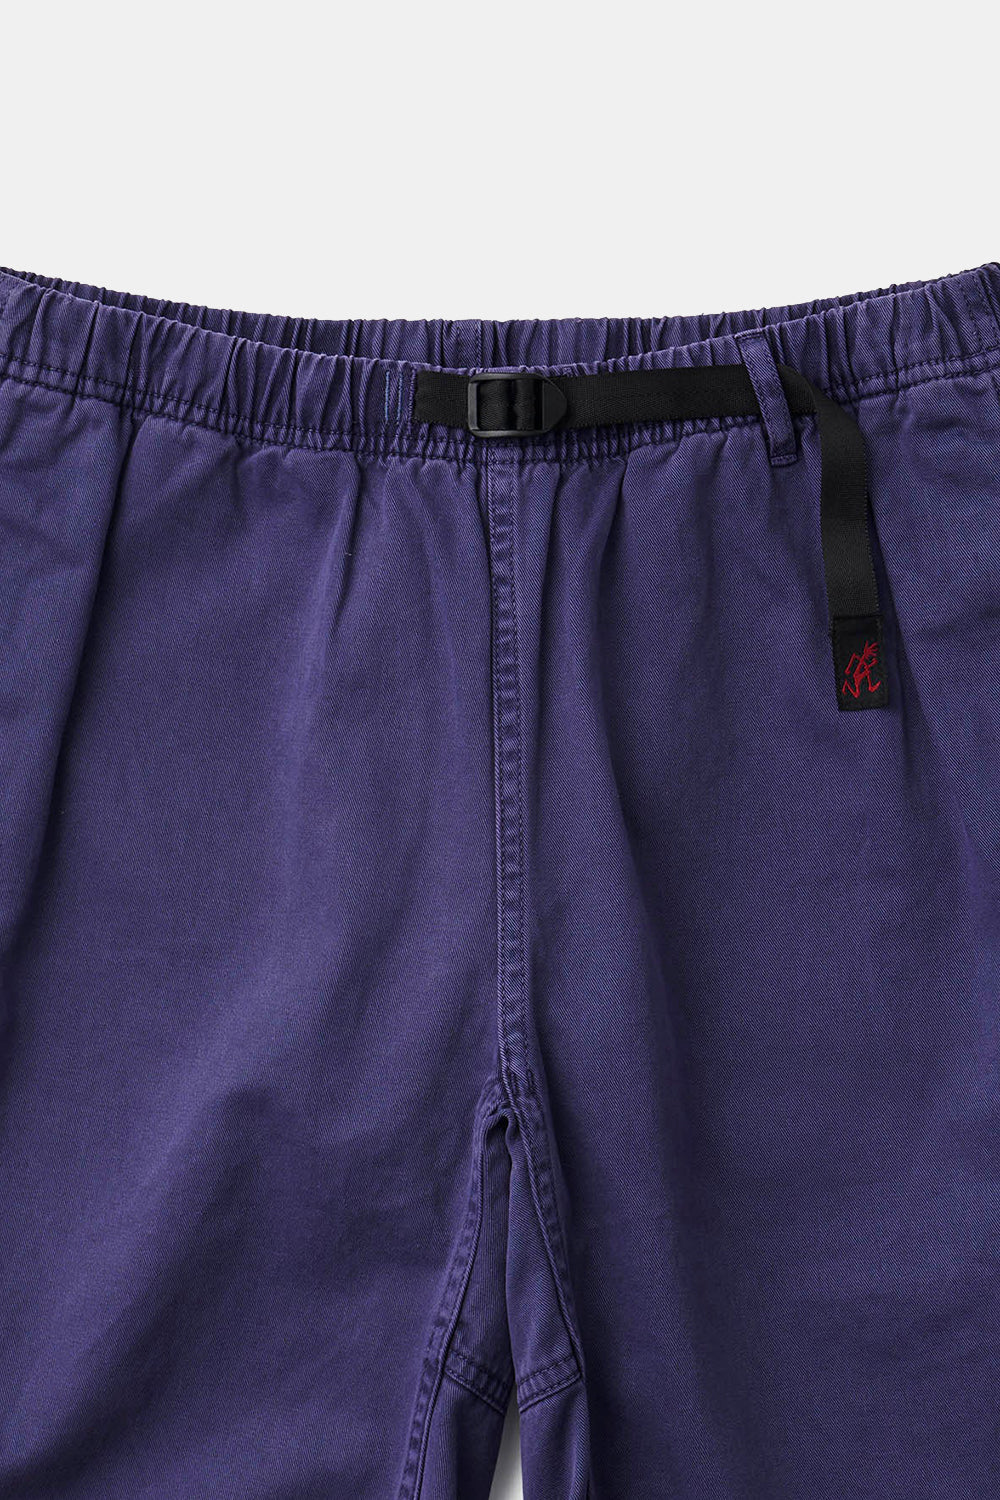 Gramicci G-Shorts Pigmentfarvet bomuldstwill (grå lilla)